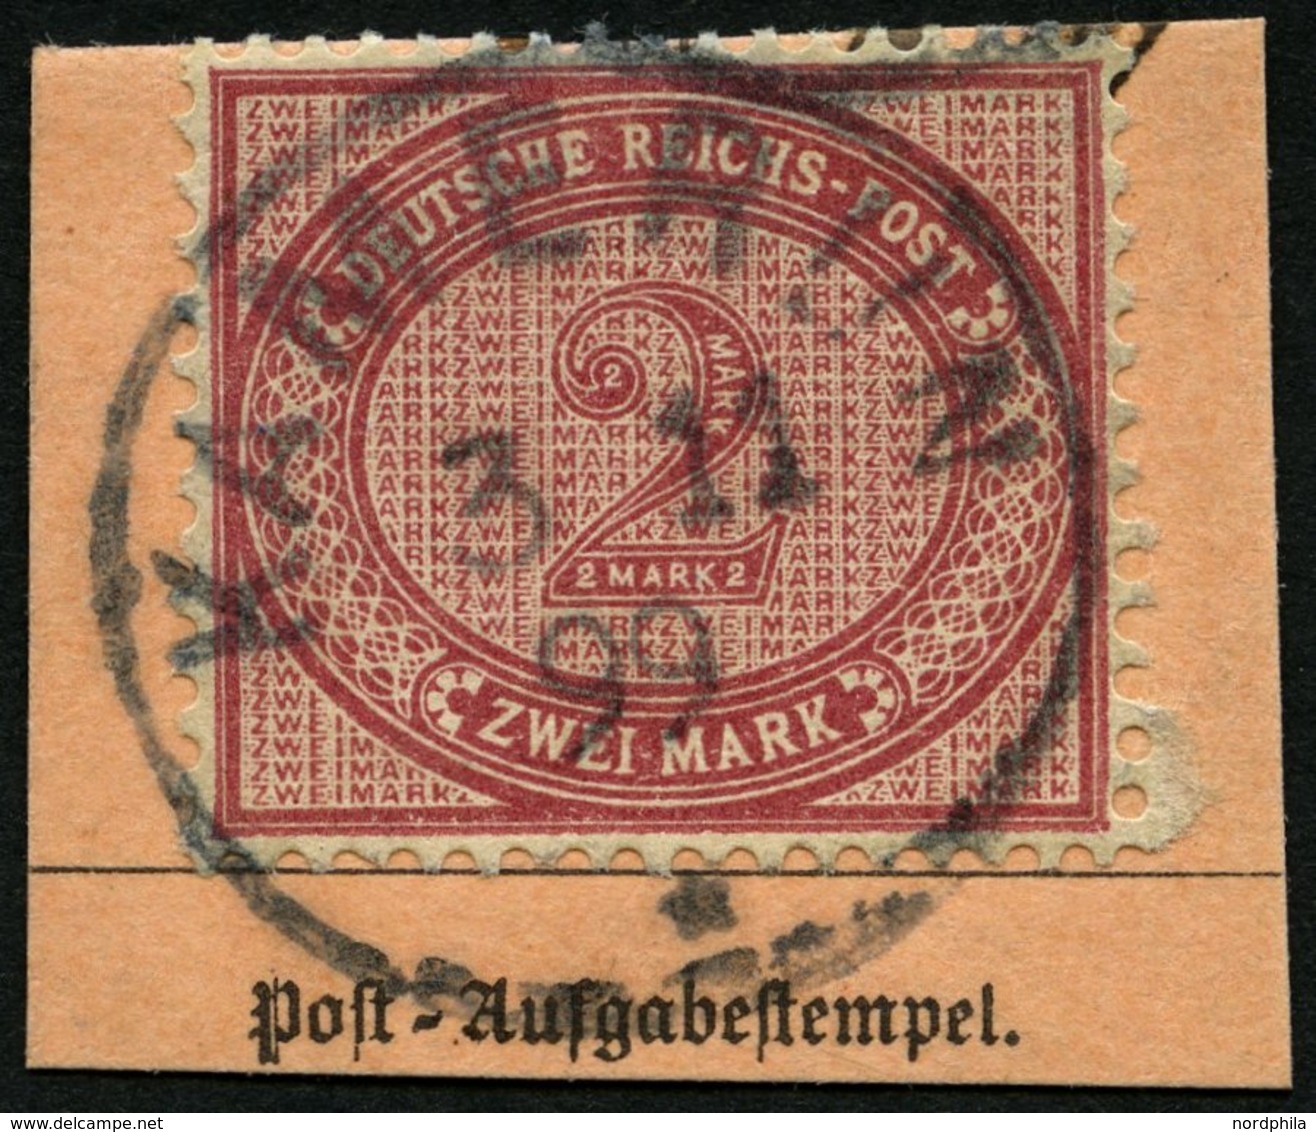 KAMERUN V 37e BrfStk, 1899, 2 M. Dunkelrotkarmin, Stempel KAMERUN, Postabschnitt, Pracht, Mi. (200.-) - Cameroun